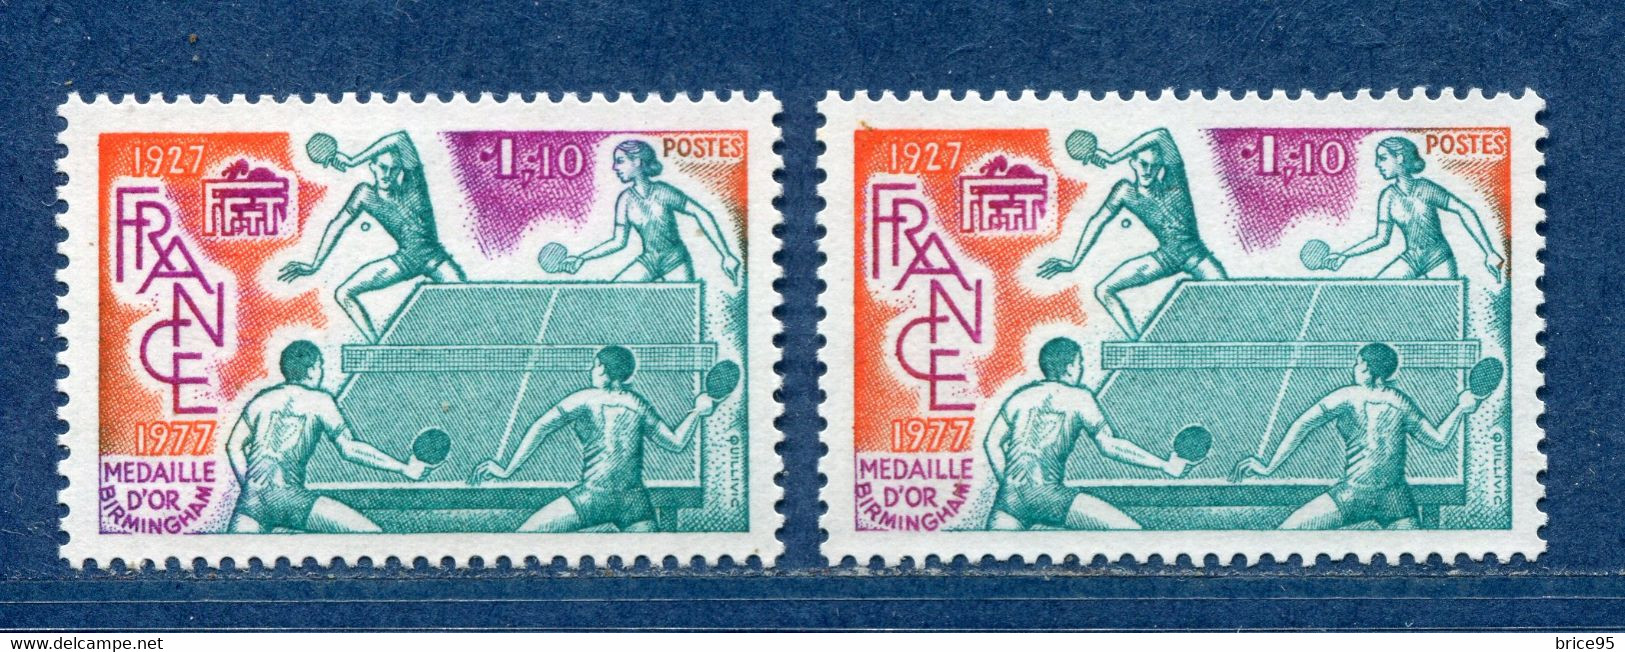 ⭐ France - Variété - YT N° 1961 - Couleurs - Pétouille - Neuf Sans Charnière - 1977 ⭐ - Ongebruikt